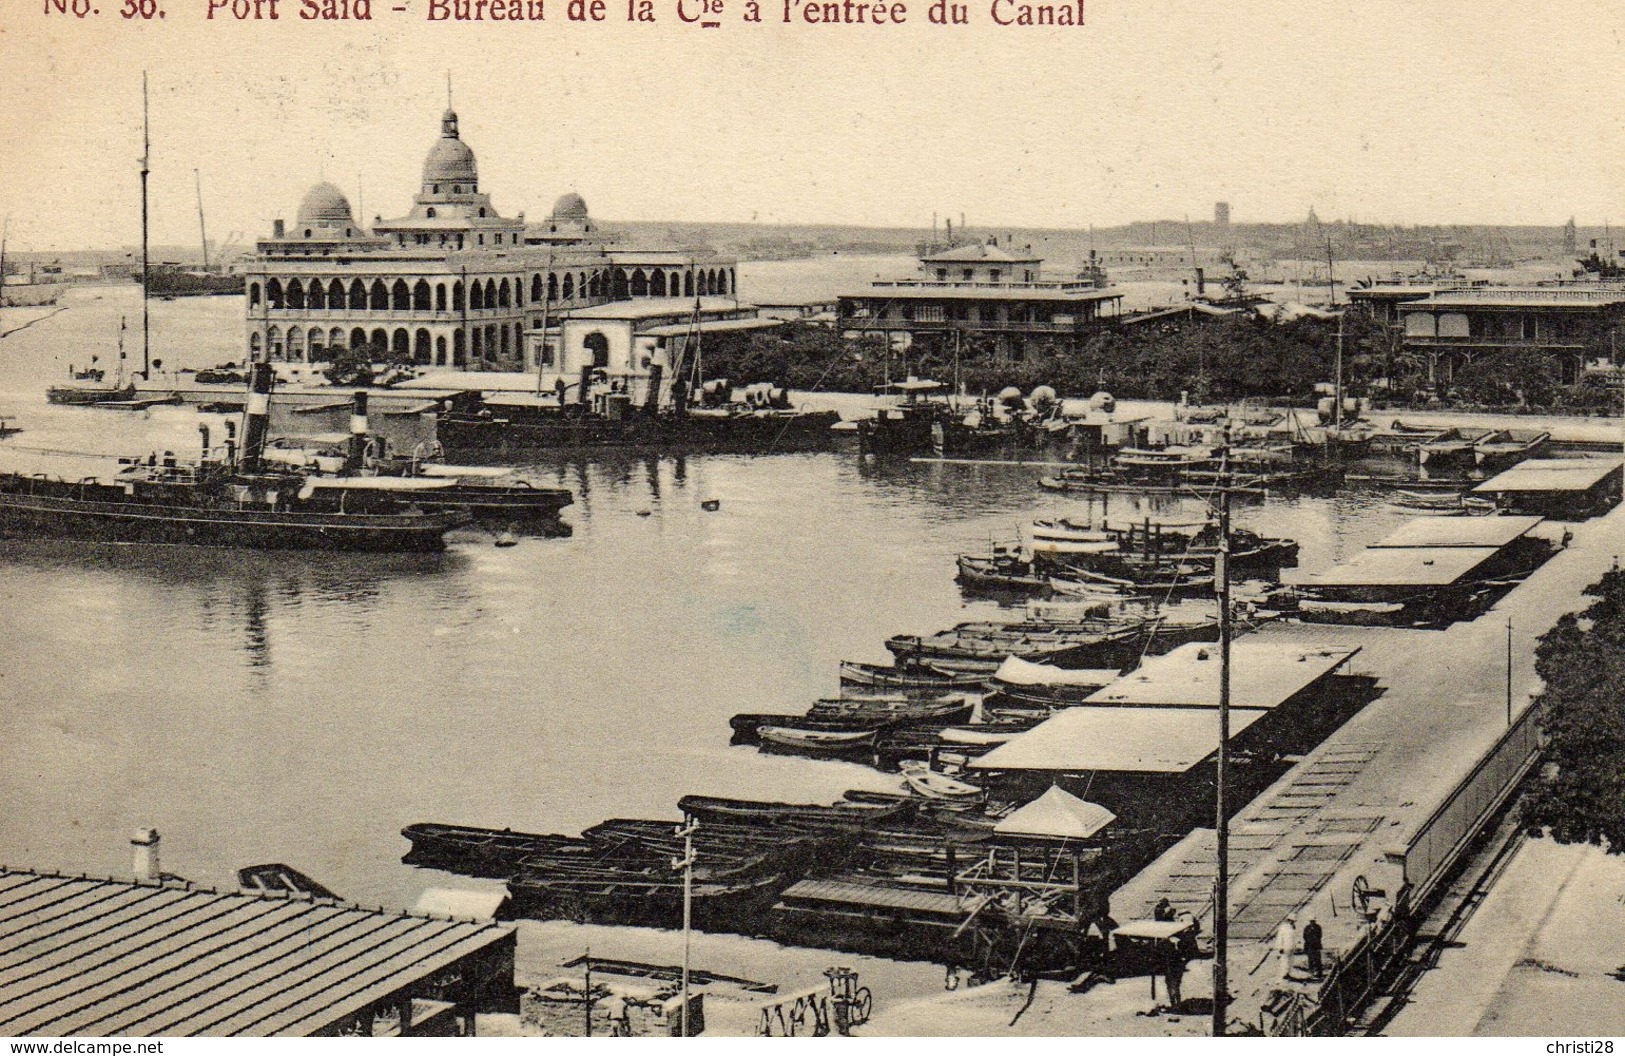 EGYPTE PORT-SAID Bureau De La Cie à L'entrée Du Canal - Puerto Saíd